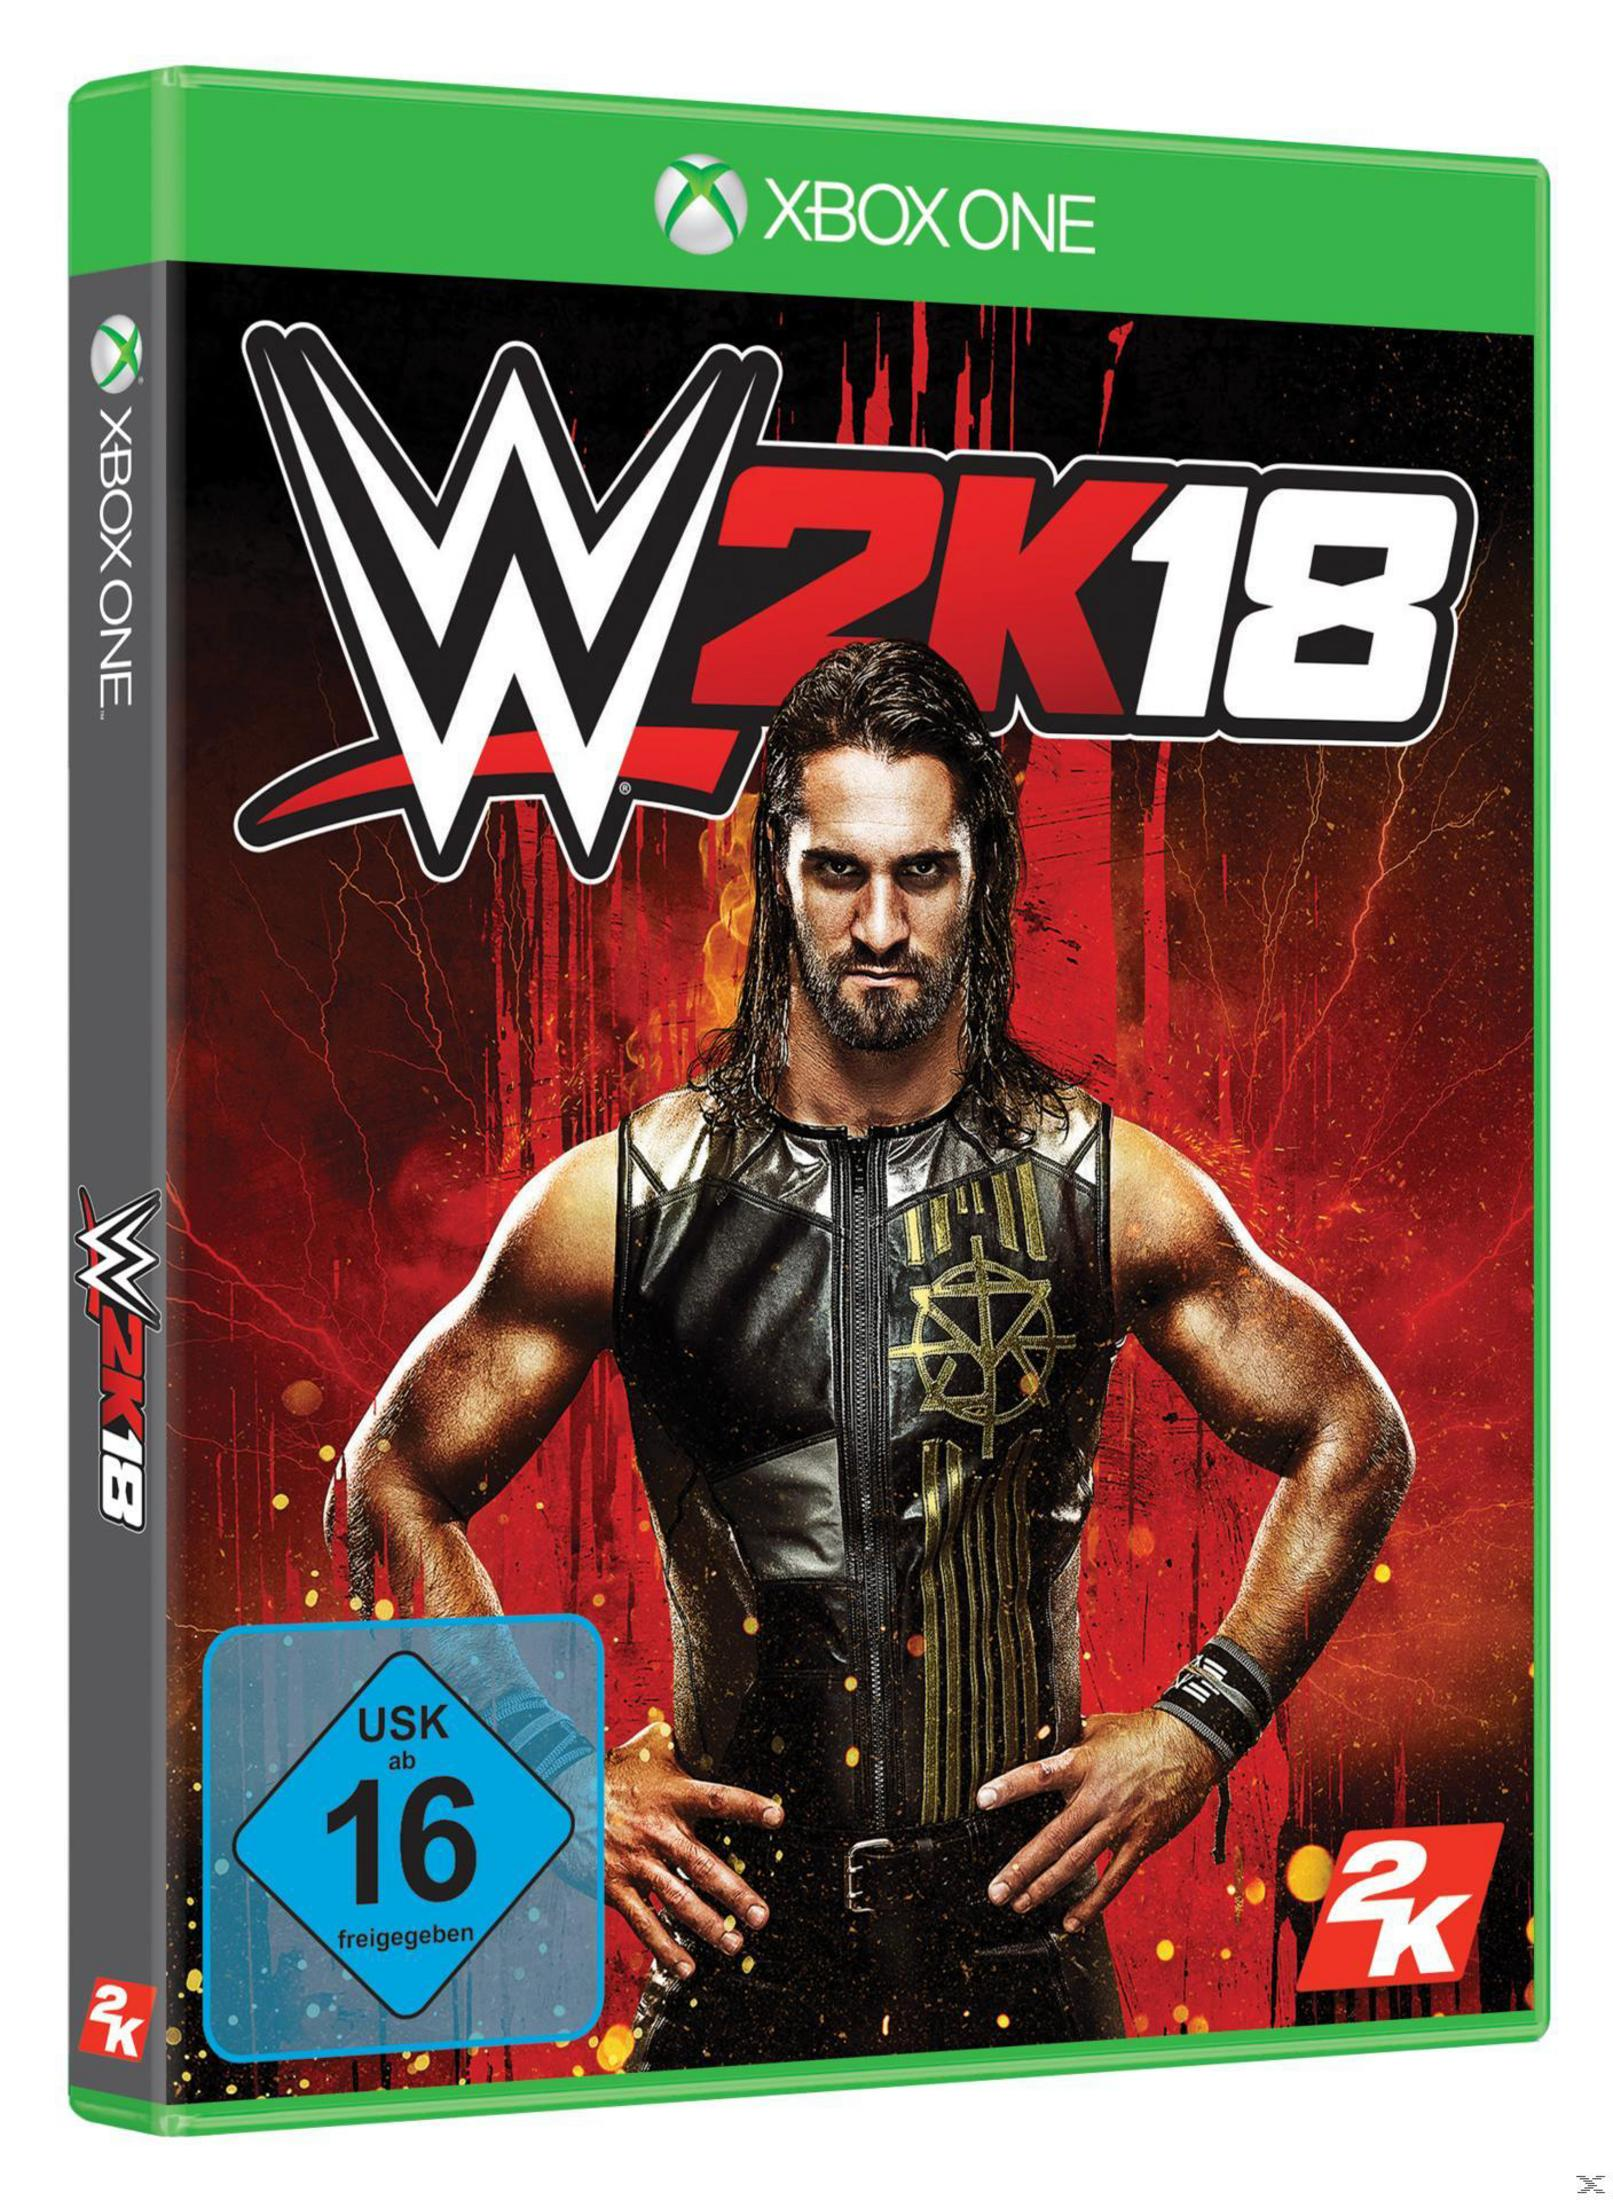 One] 2K18 - WWE [Xbox